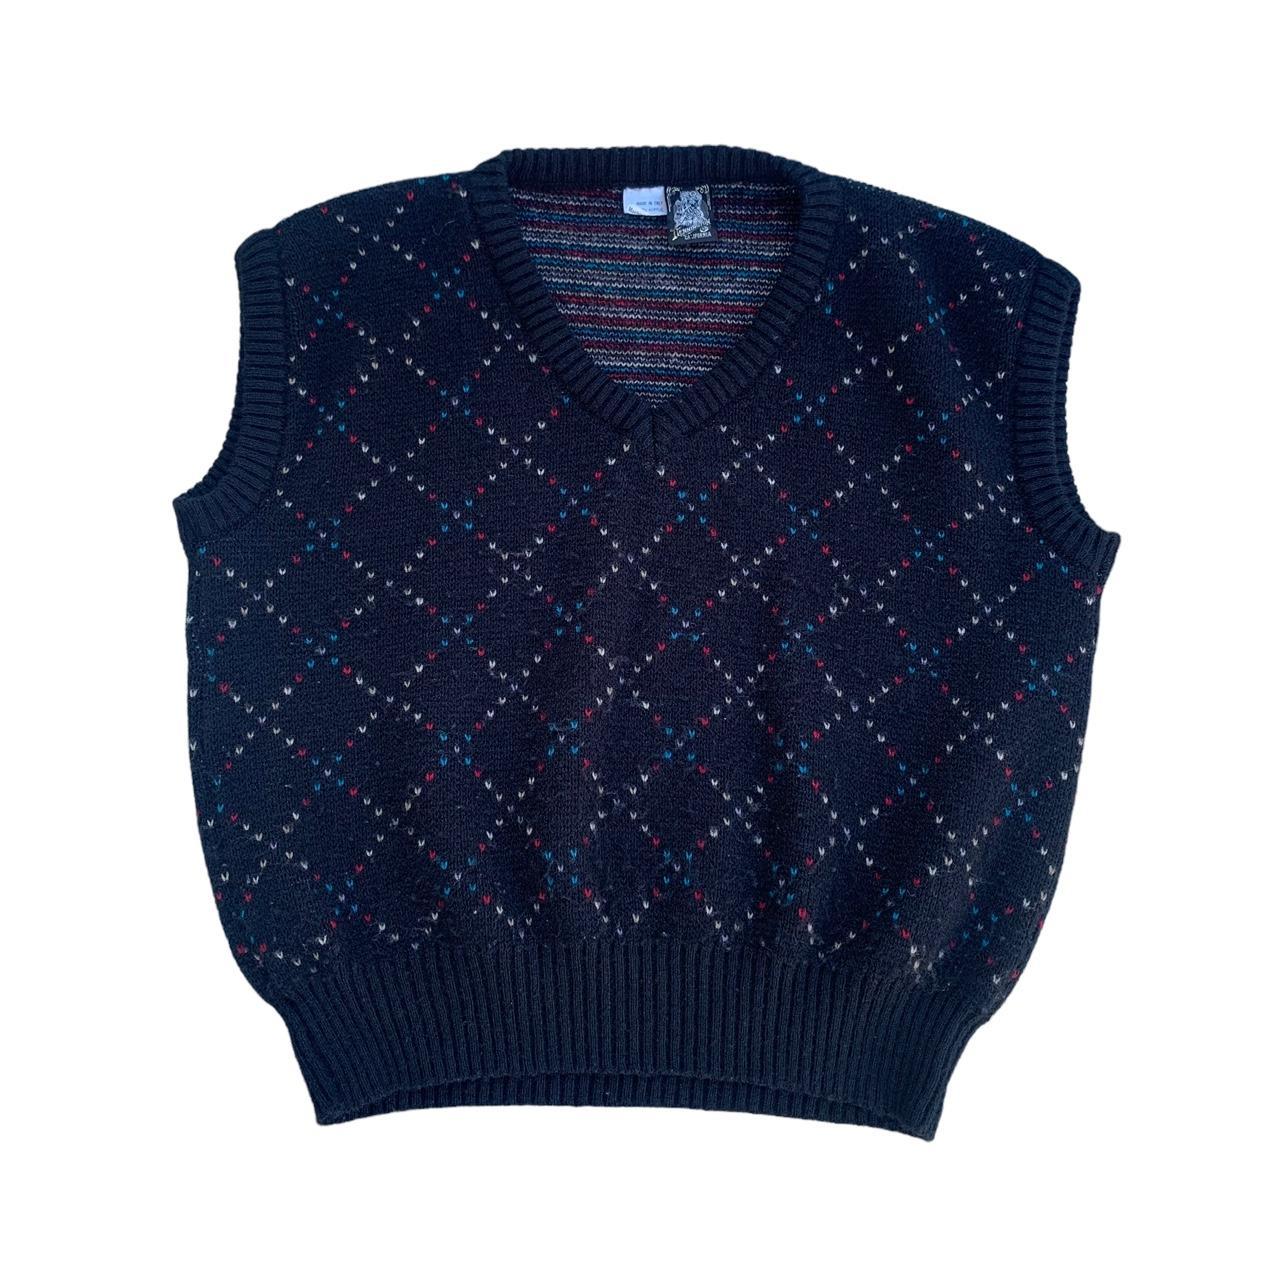 Supreme knit-vest - Depop